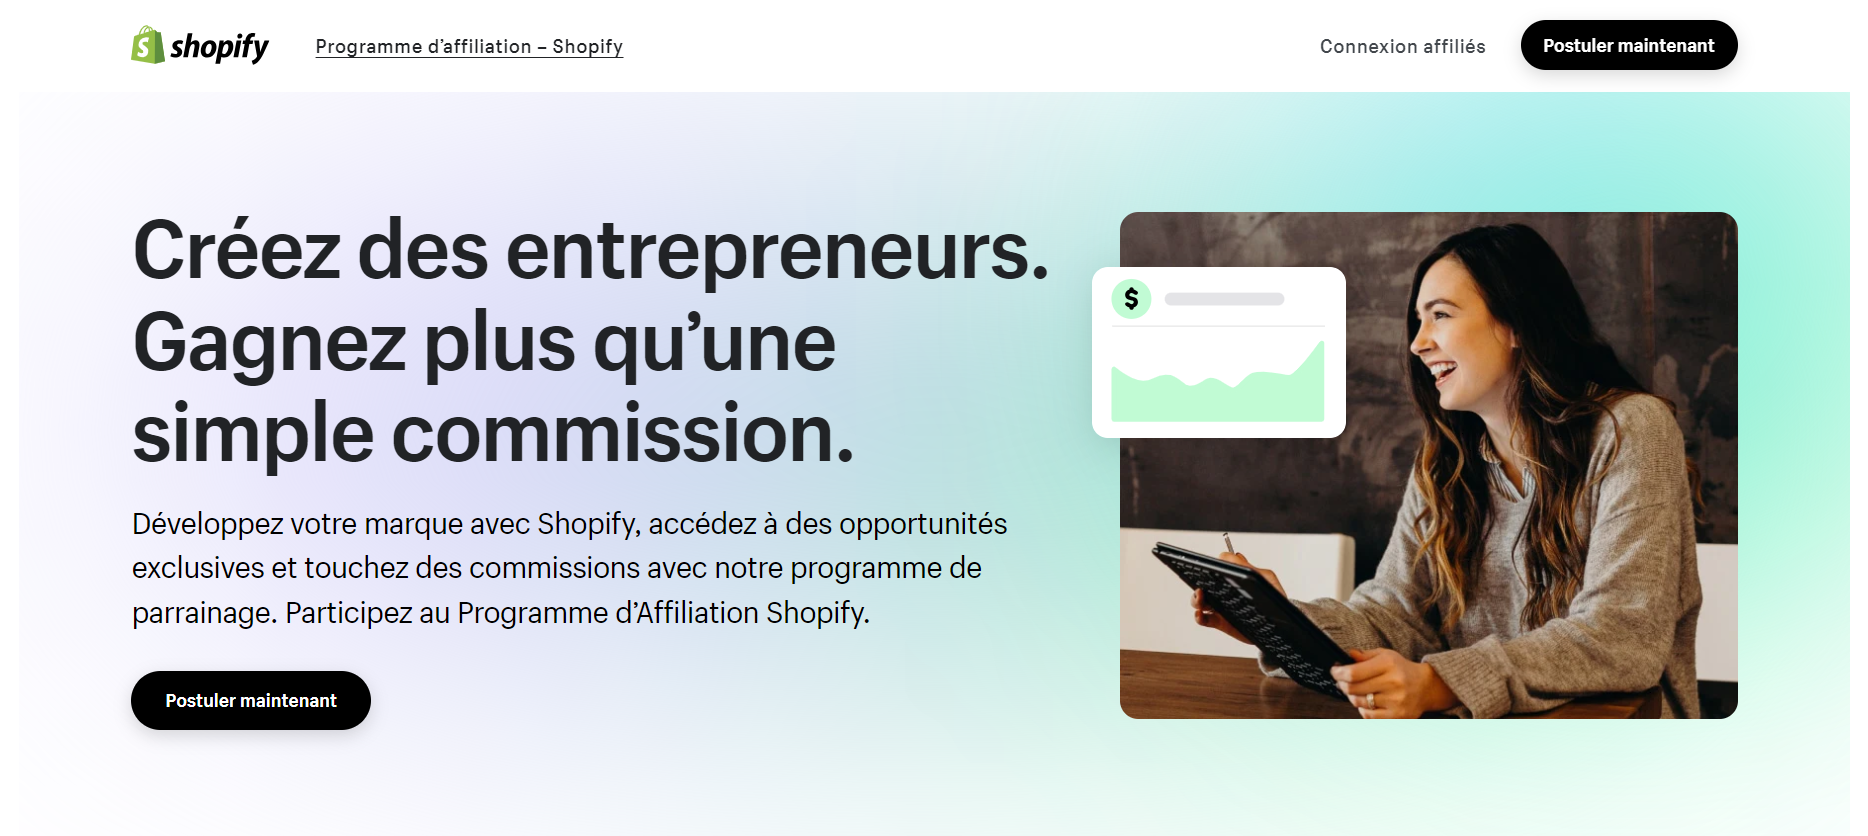 programme d'affiliation de Shopify